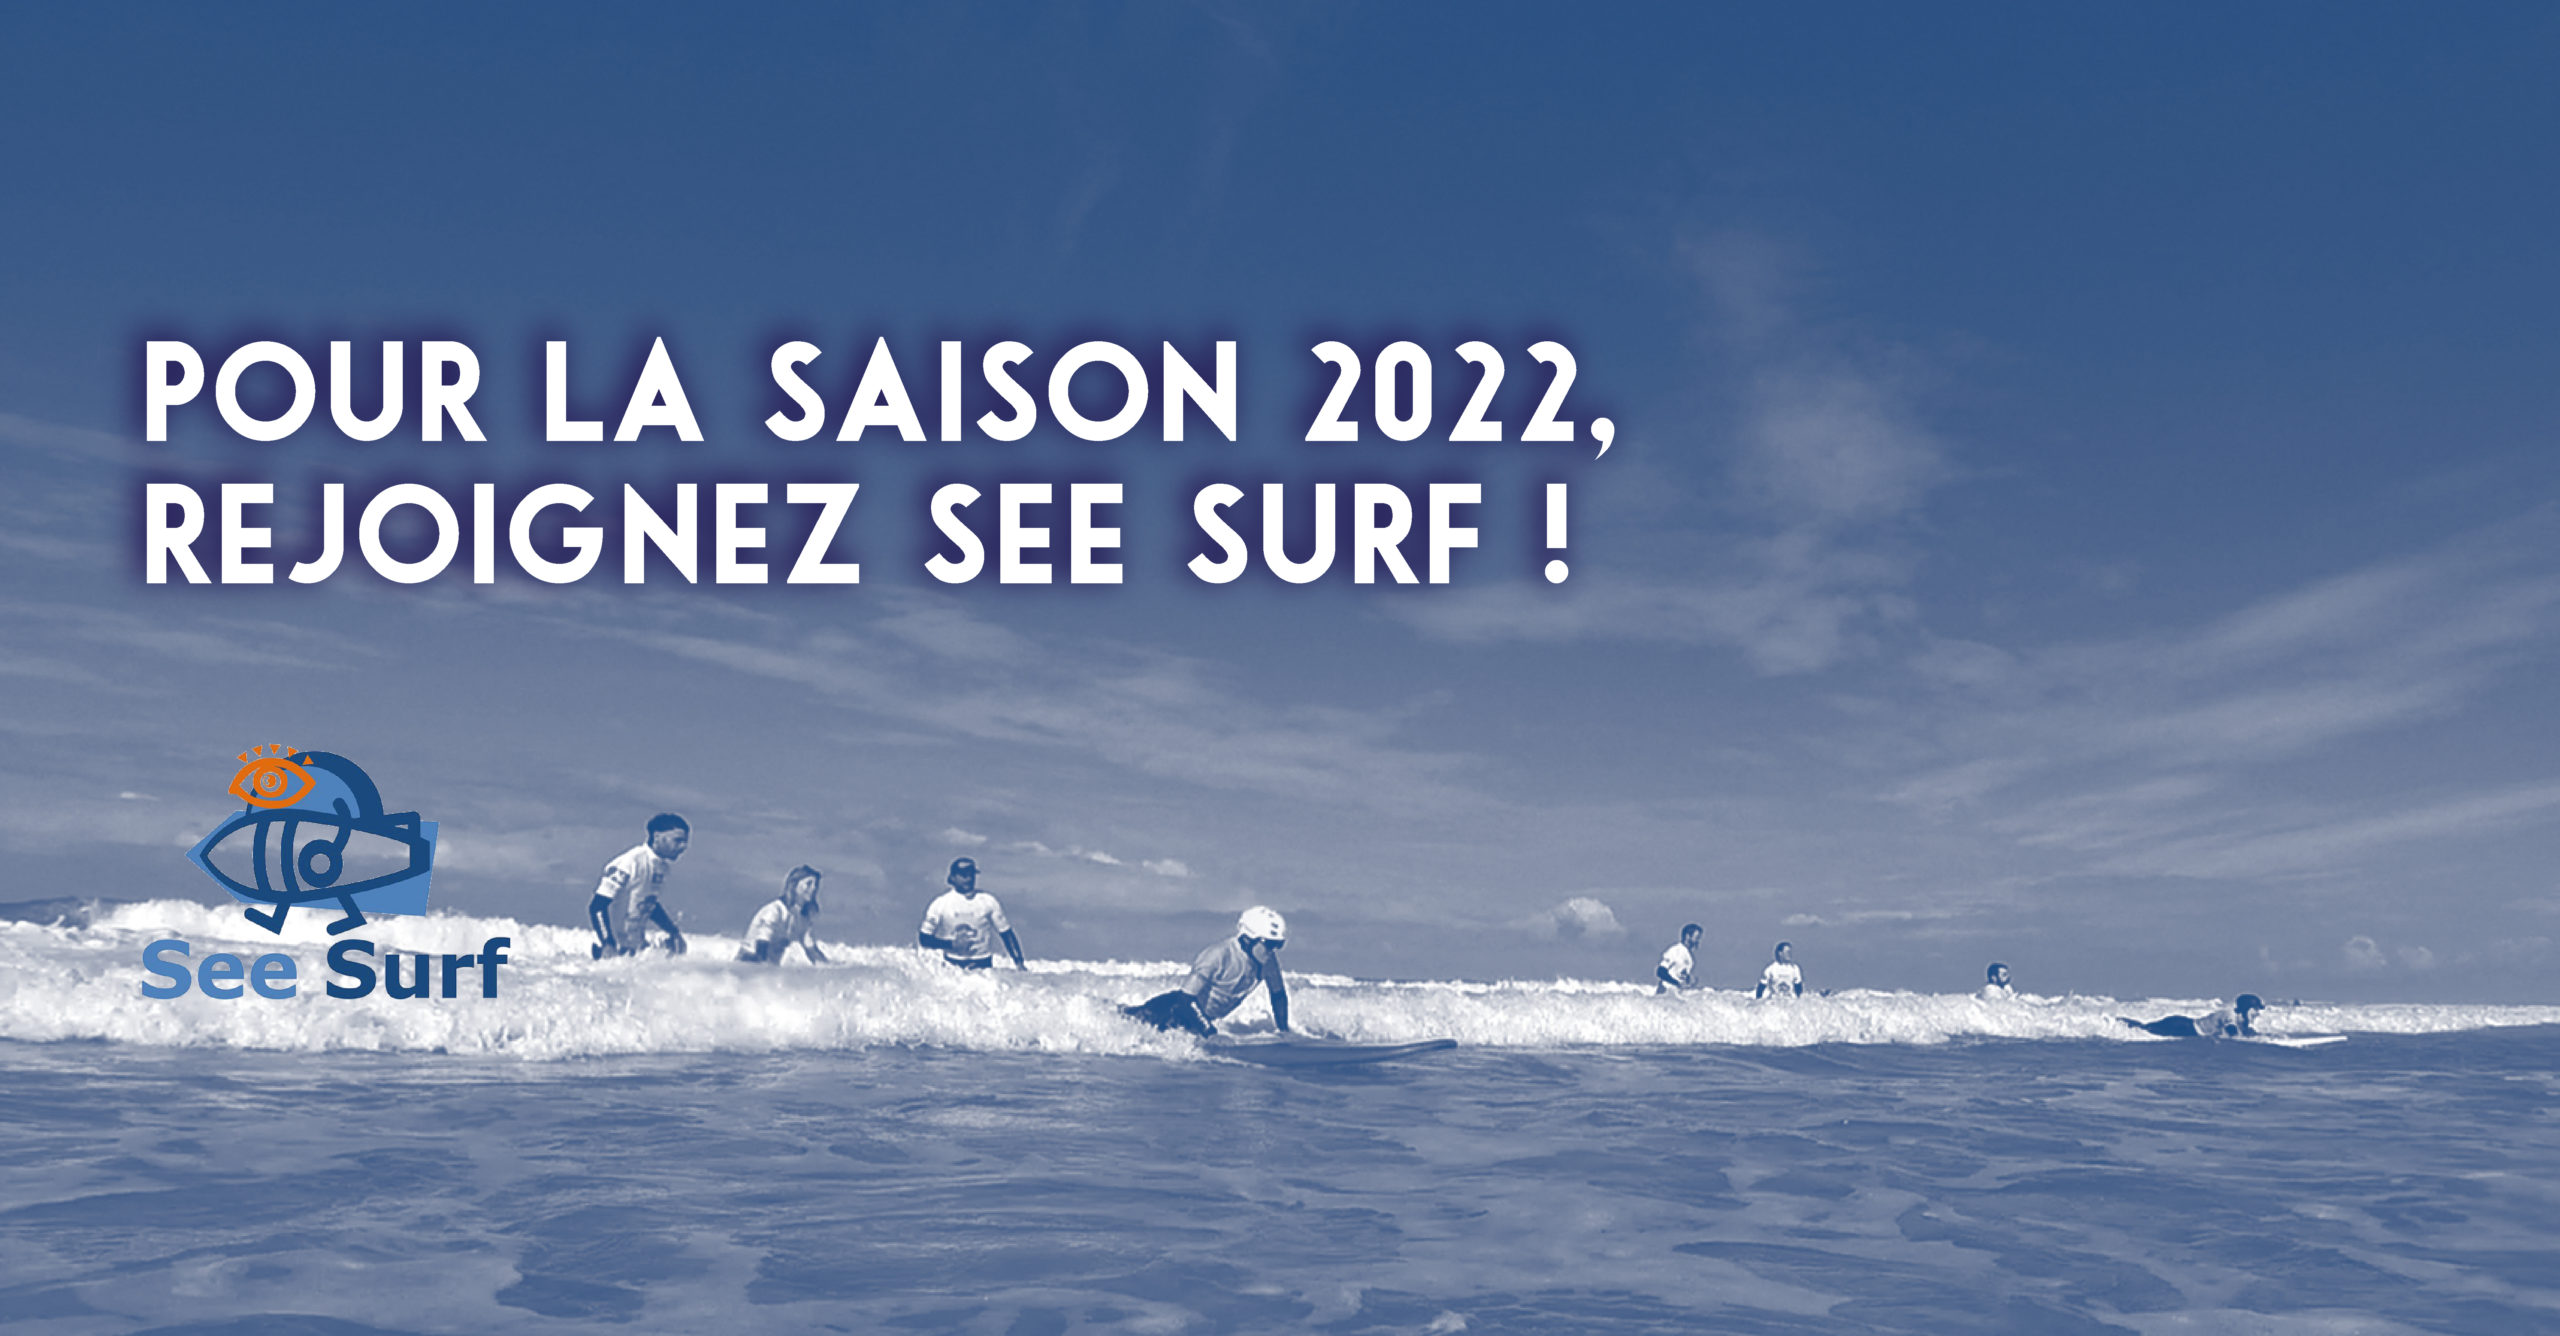 Pour la saison 2022, rejoignez See Surf !